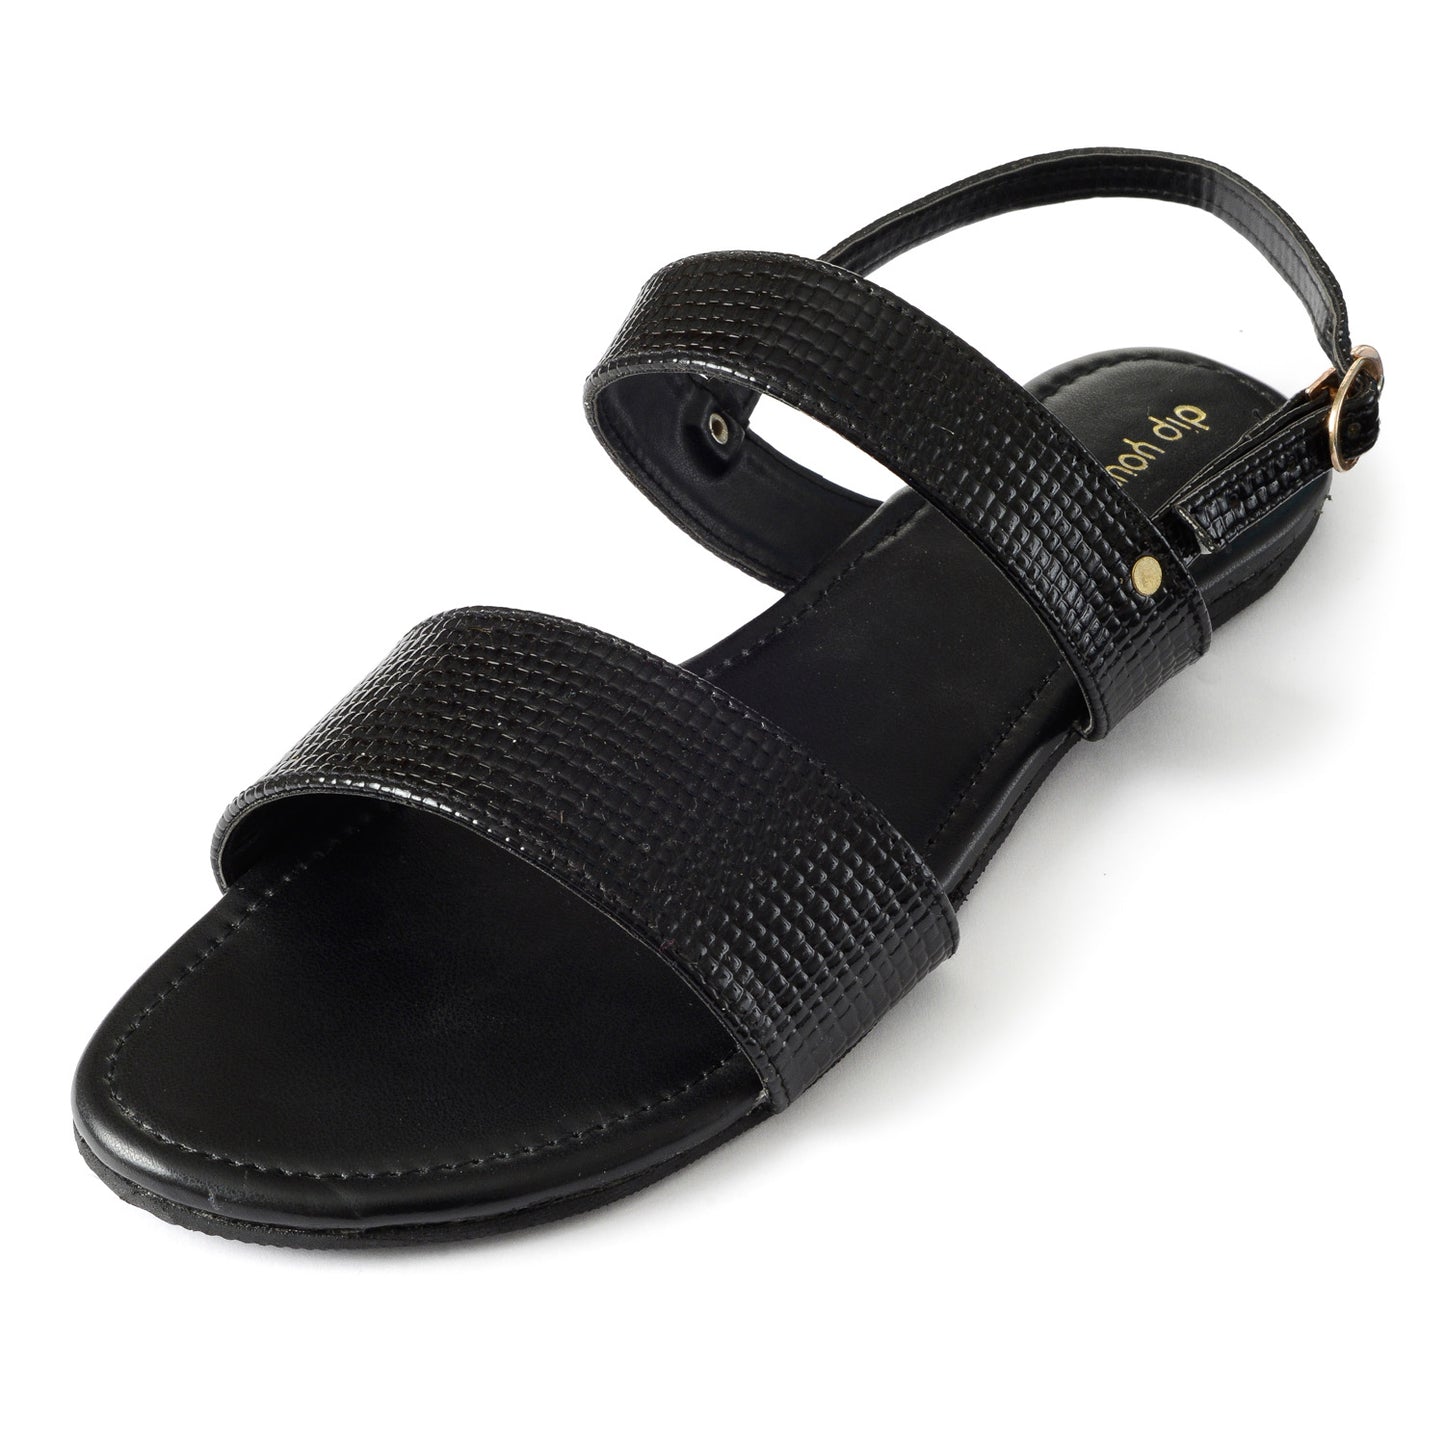 Black textured twin strap sandals